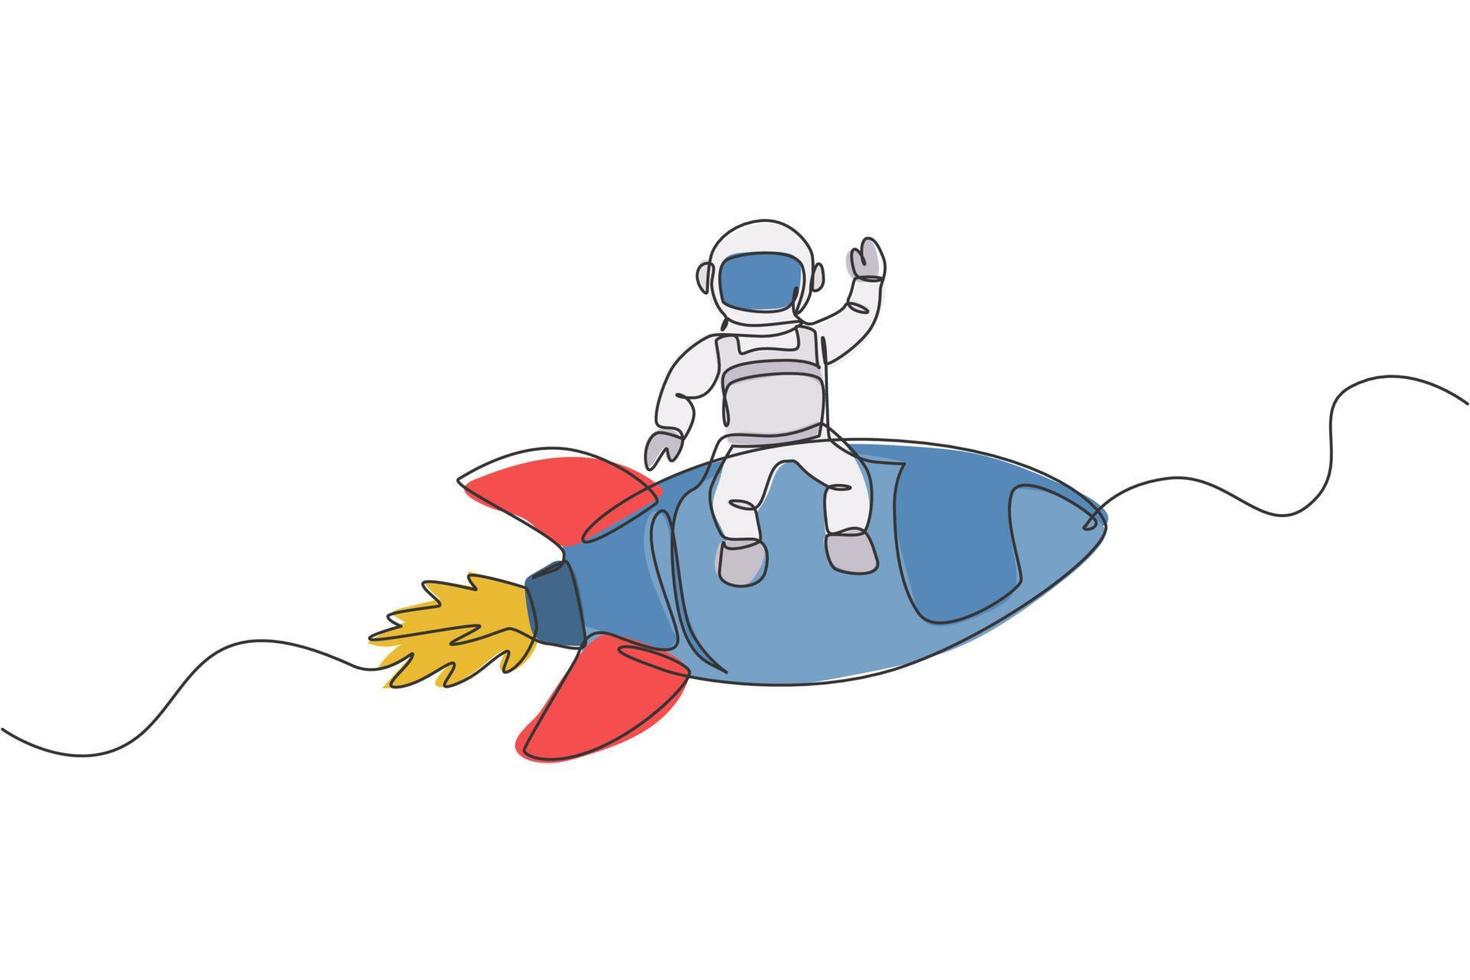 un disegno a tratteggio continuo dell'astronauta astronauta che agita la mano e si siede su un razzo volante. esplorazione del cosmonauta del concetto di spazio esterno. illustrazione vettoriale di disegno grafico di disegno grafico a linea singola dinamica